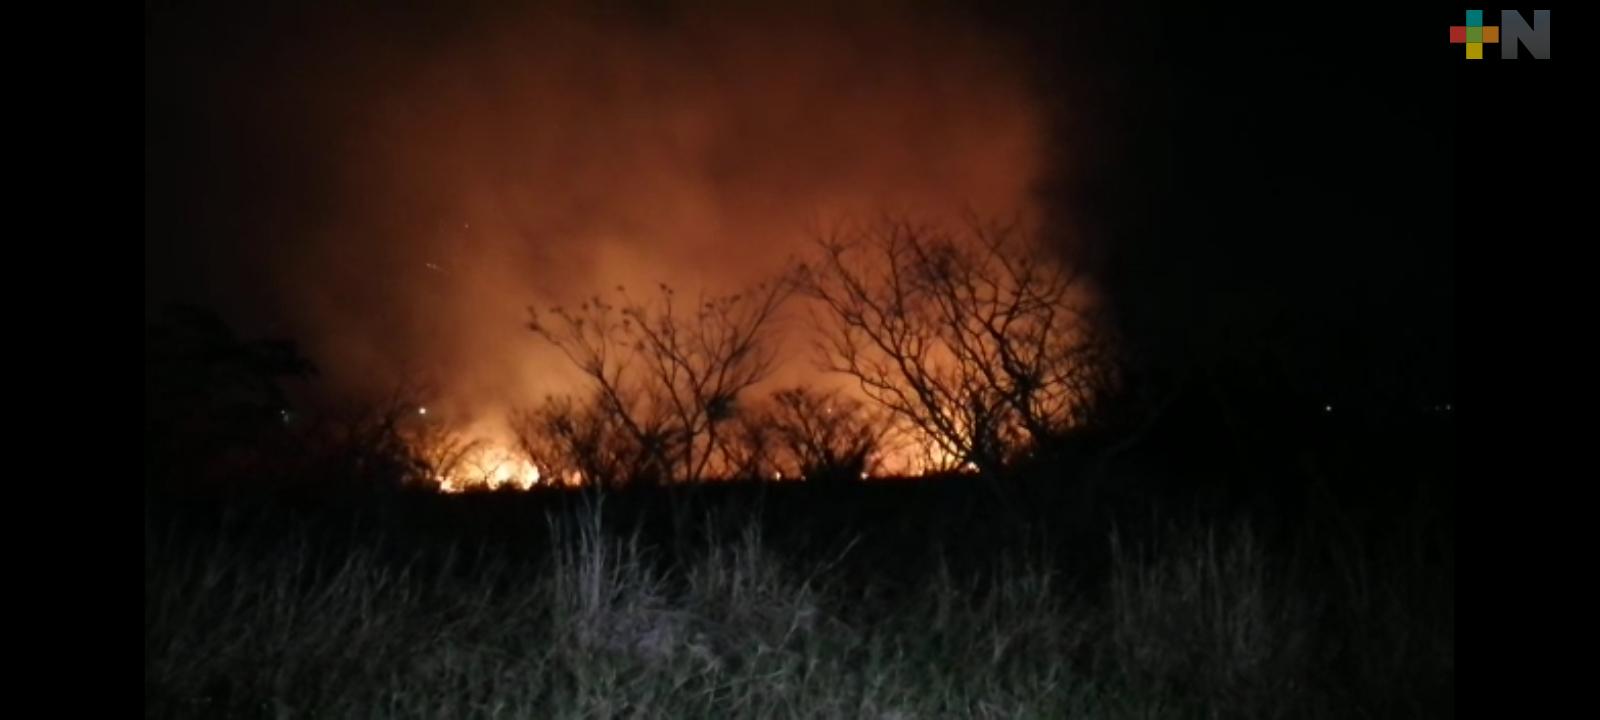 Se registra incendio forestal en Puente Moreno